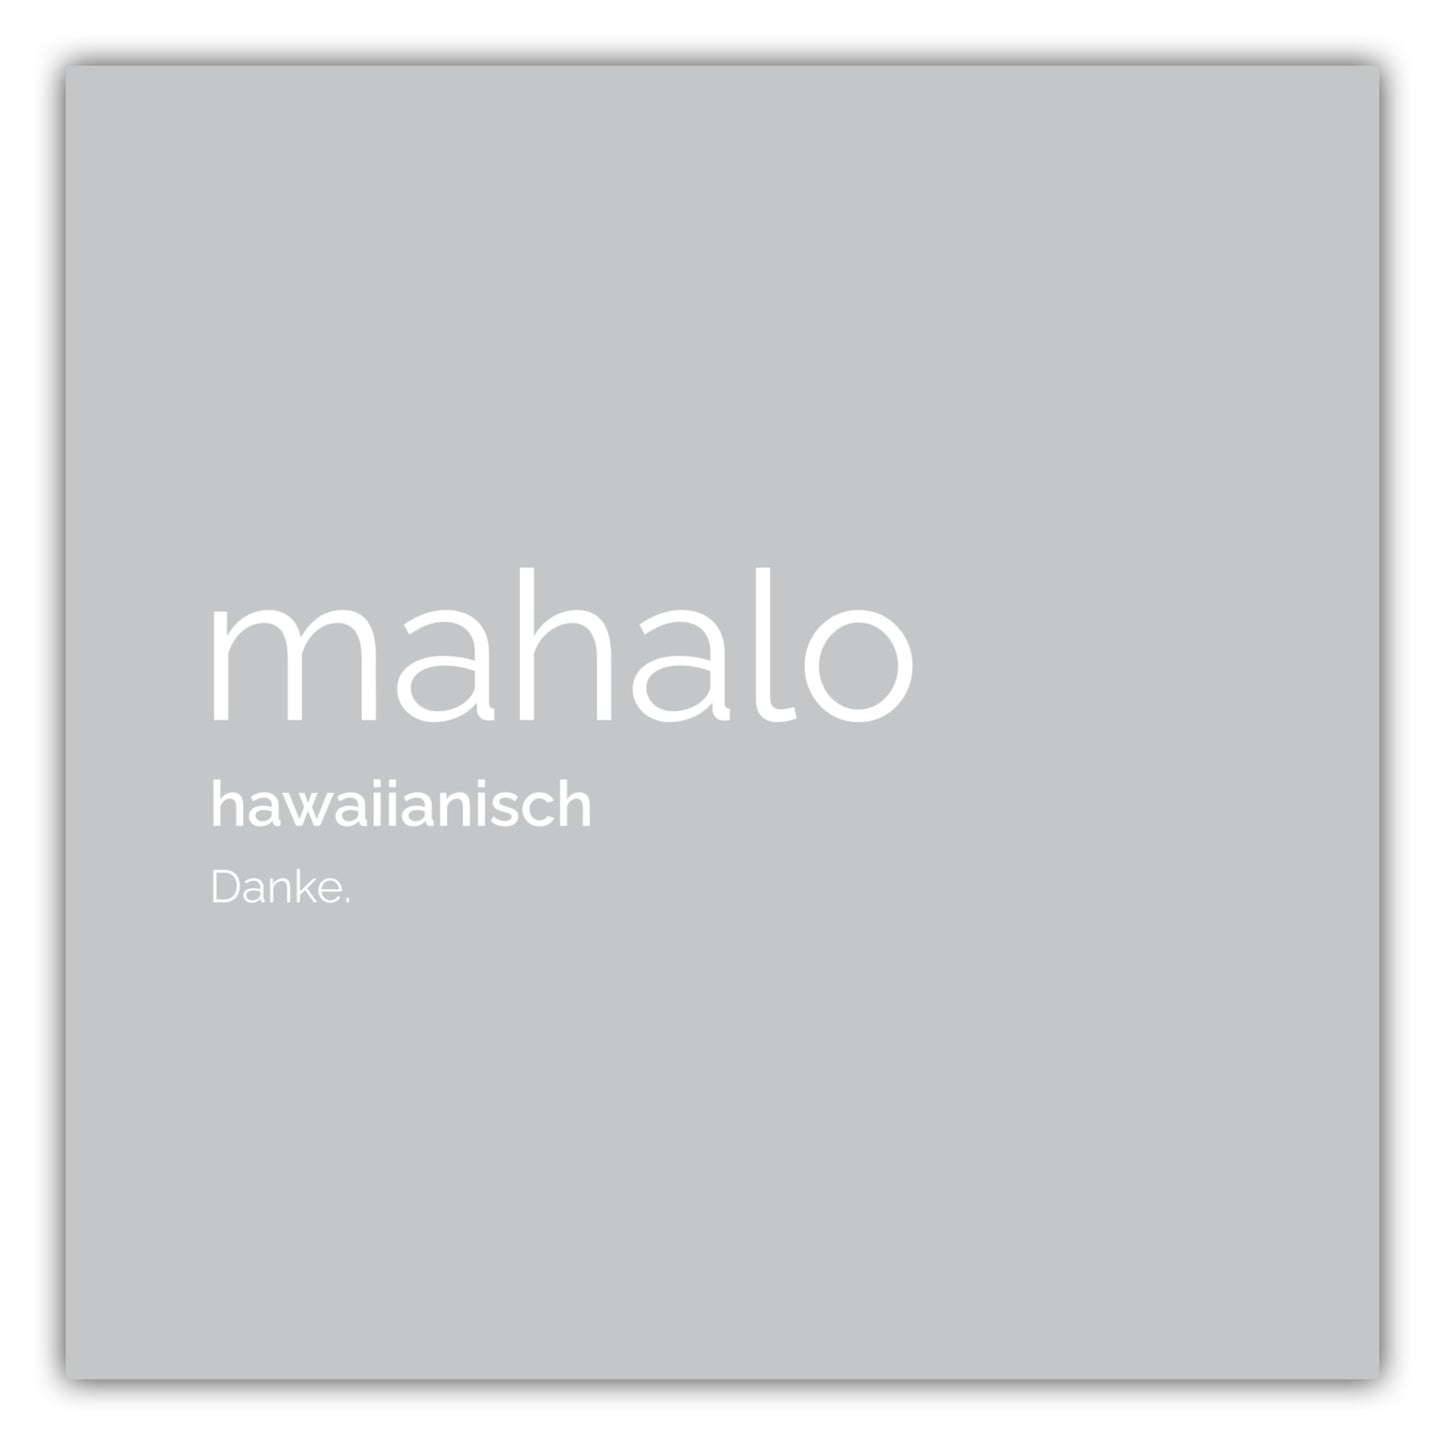 Poster Mahalo (Hawaiianisch: Danke)